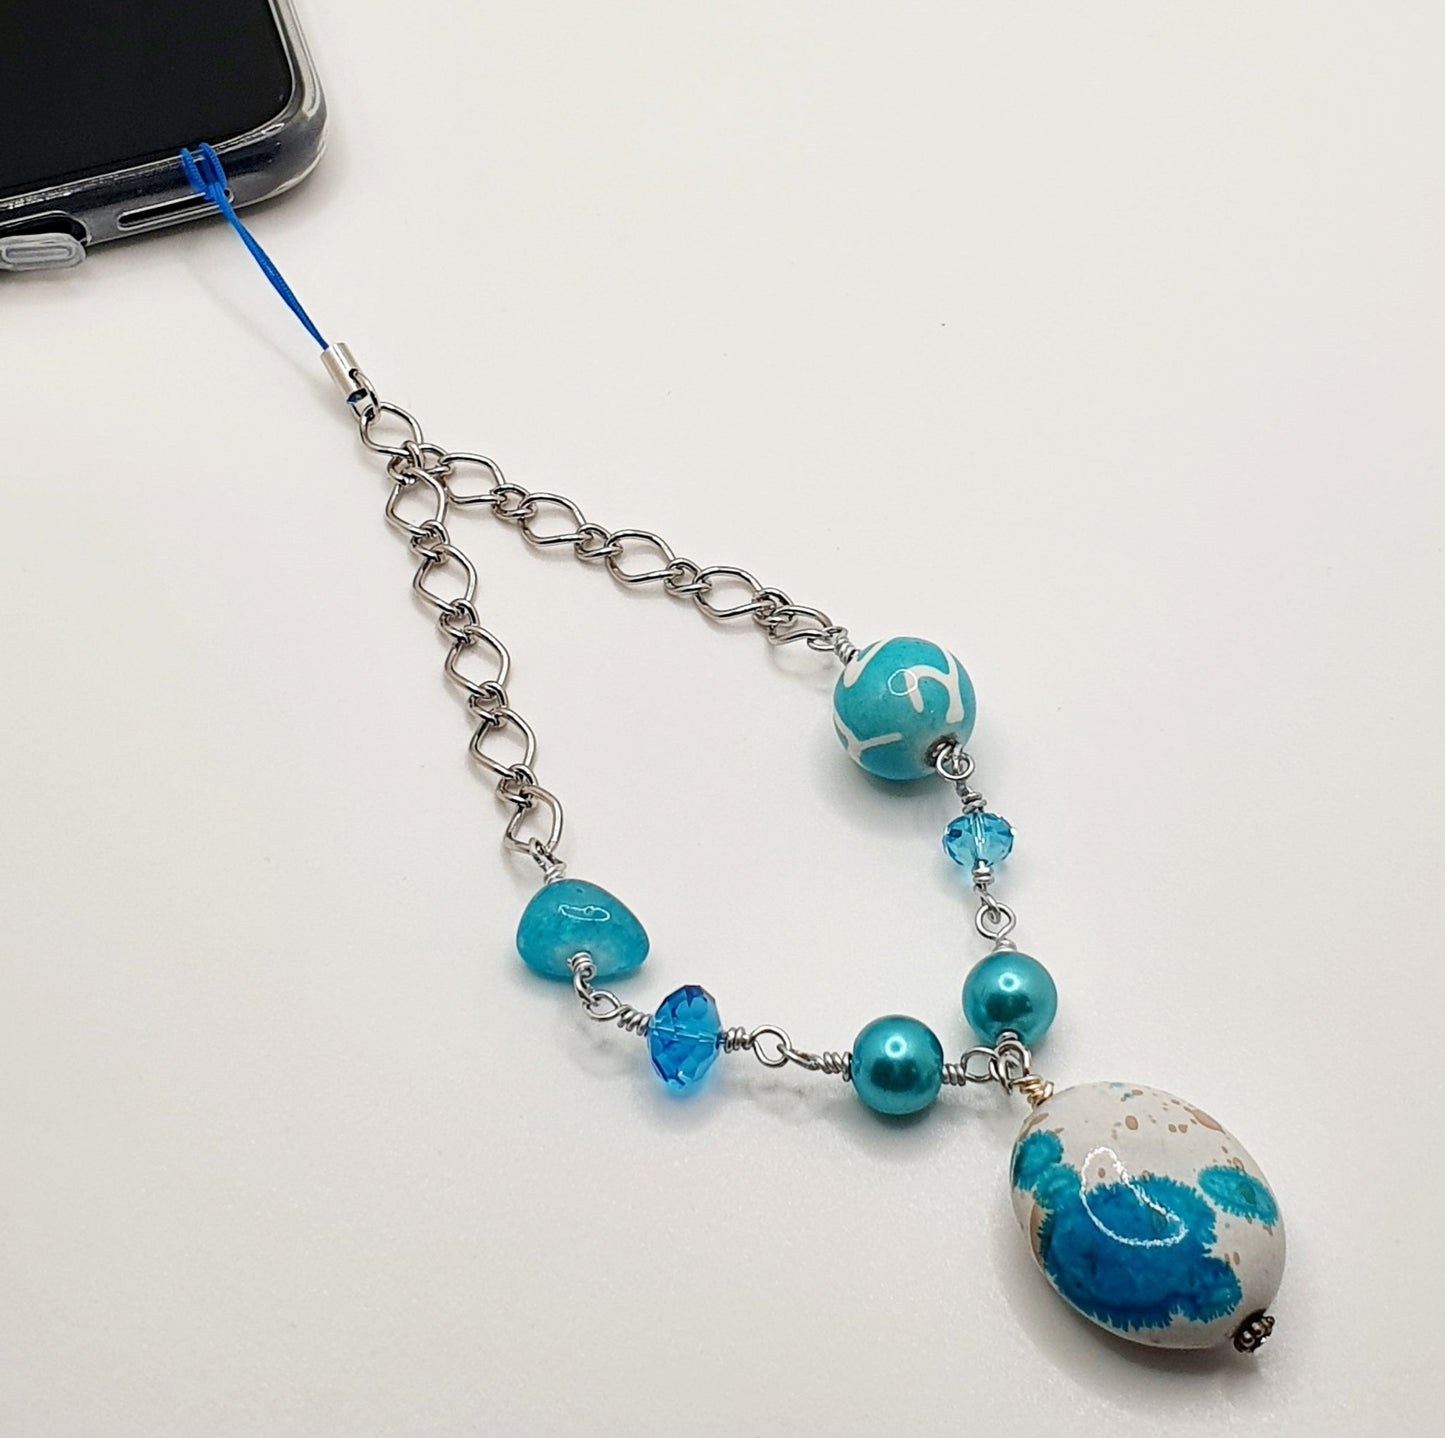 Bijoux de téléphone - Collection Blue Lagoon - Atelier 9viescom9 - 2